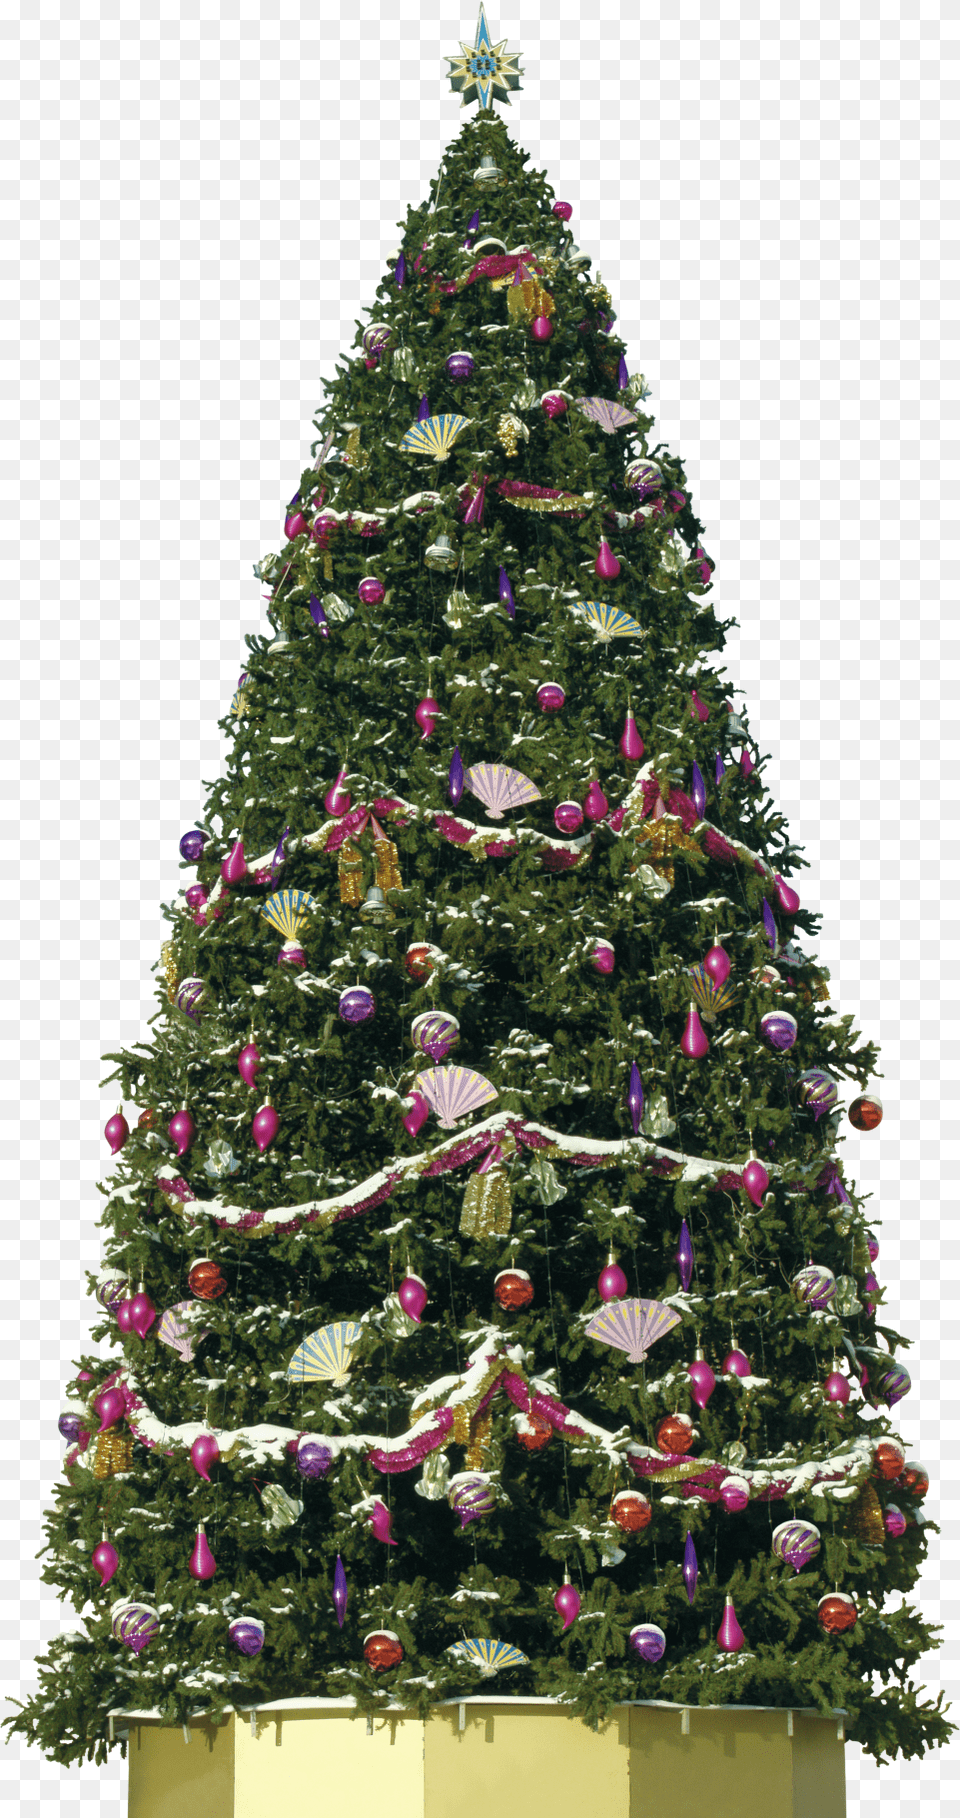 Big Decorative Christmas Tree Big Christmas Tree, Plant, Christmas Decorations, Festival, Christmas Tree Free Png Download